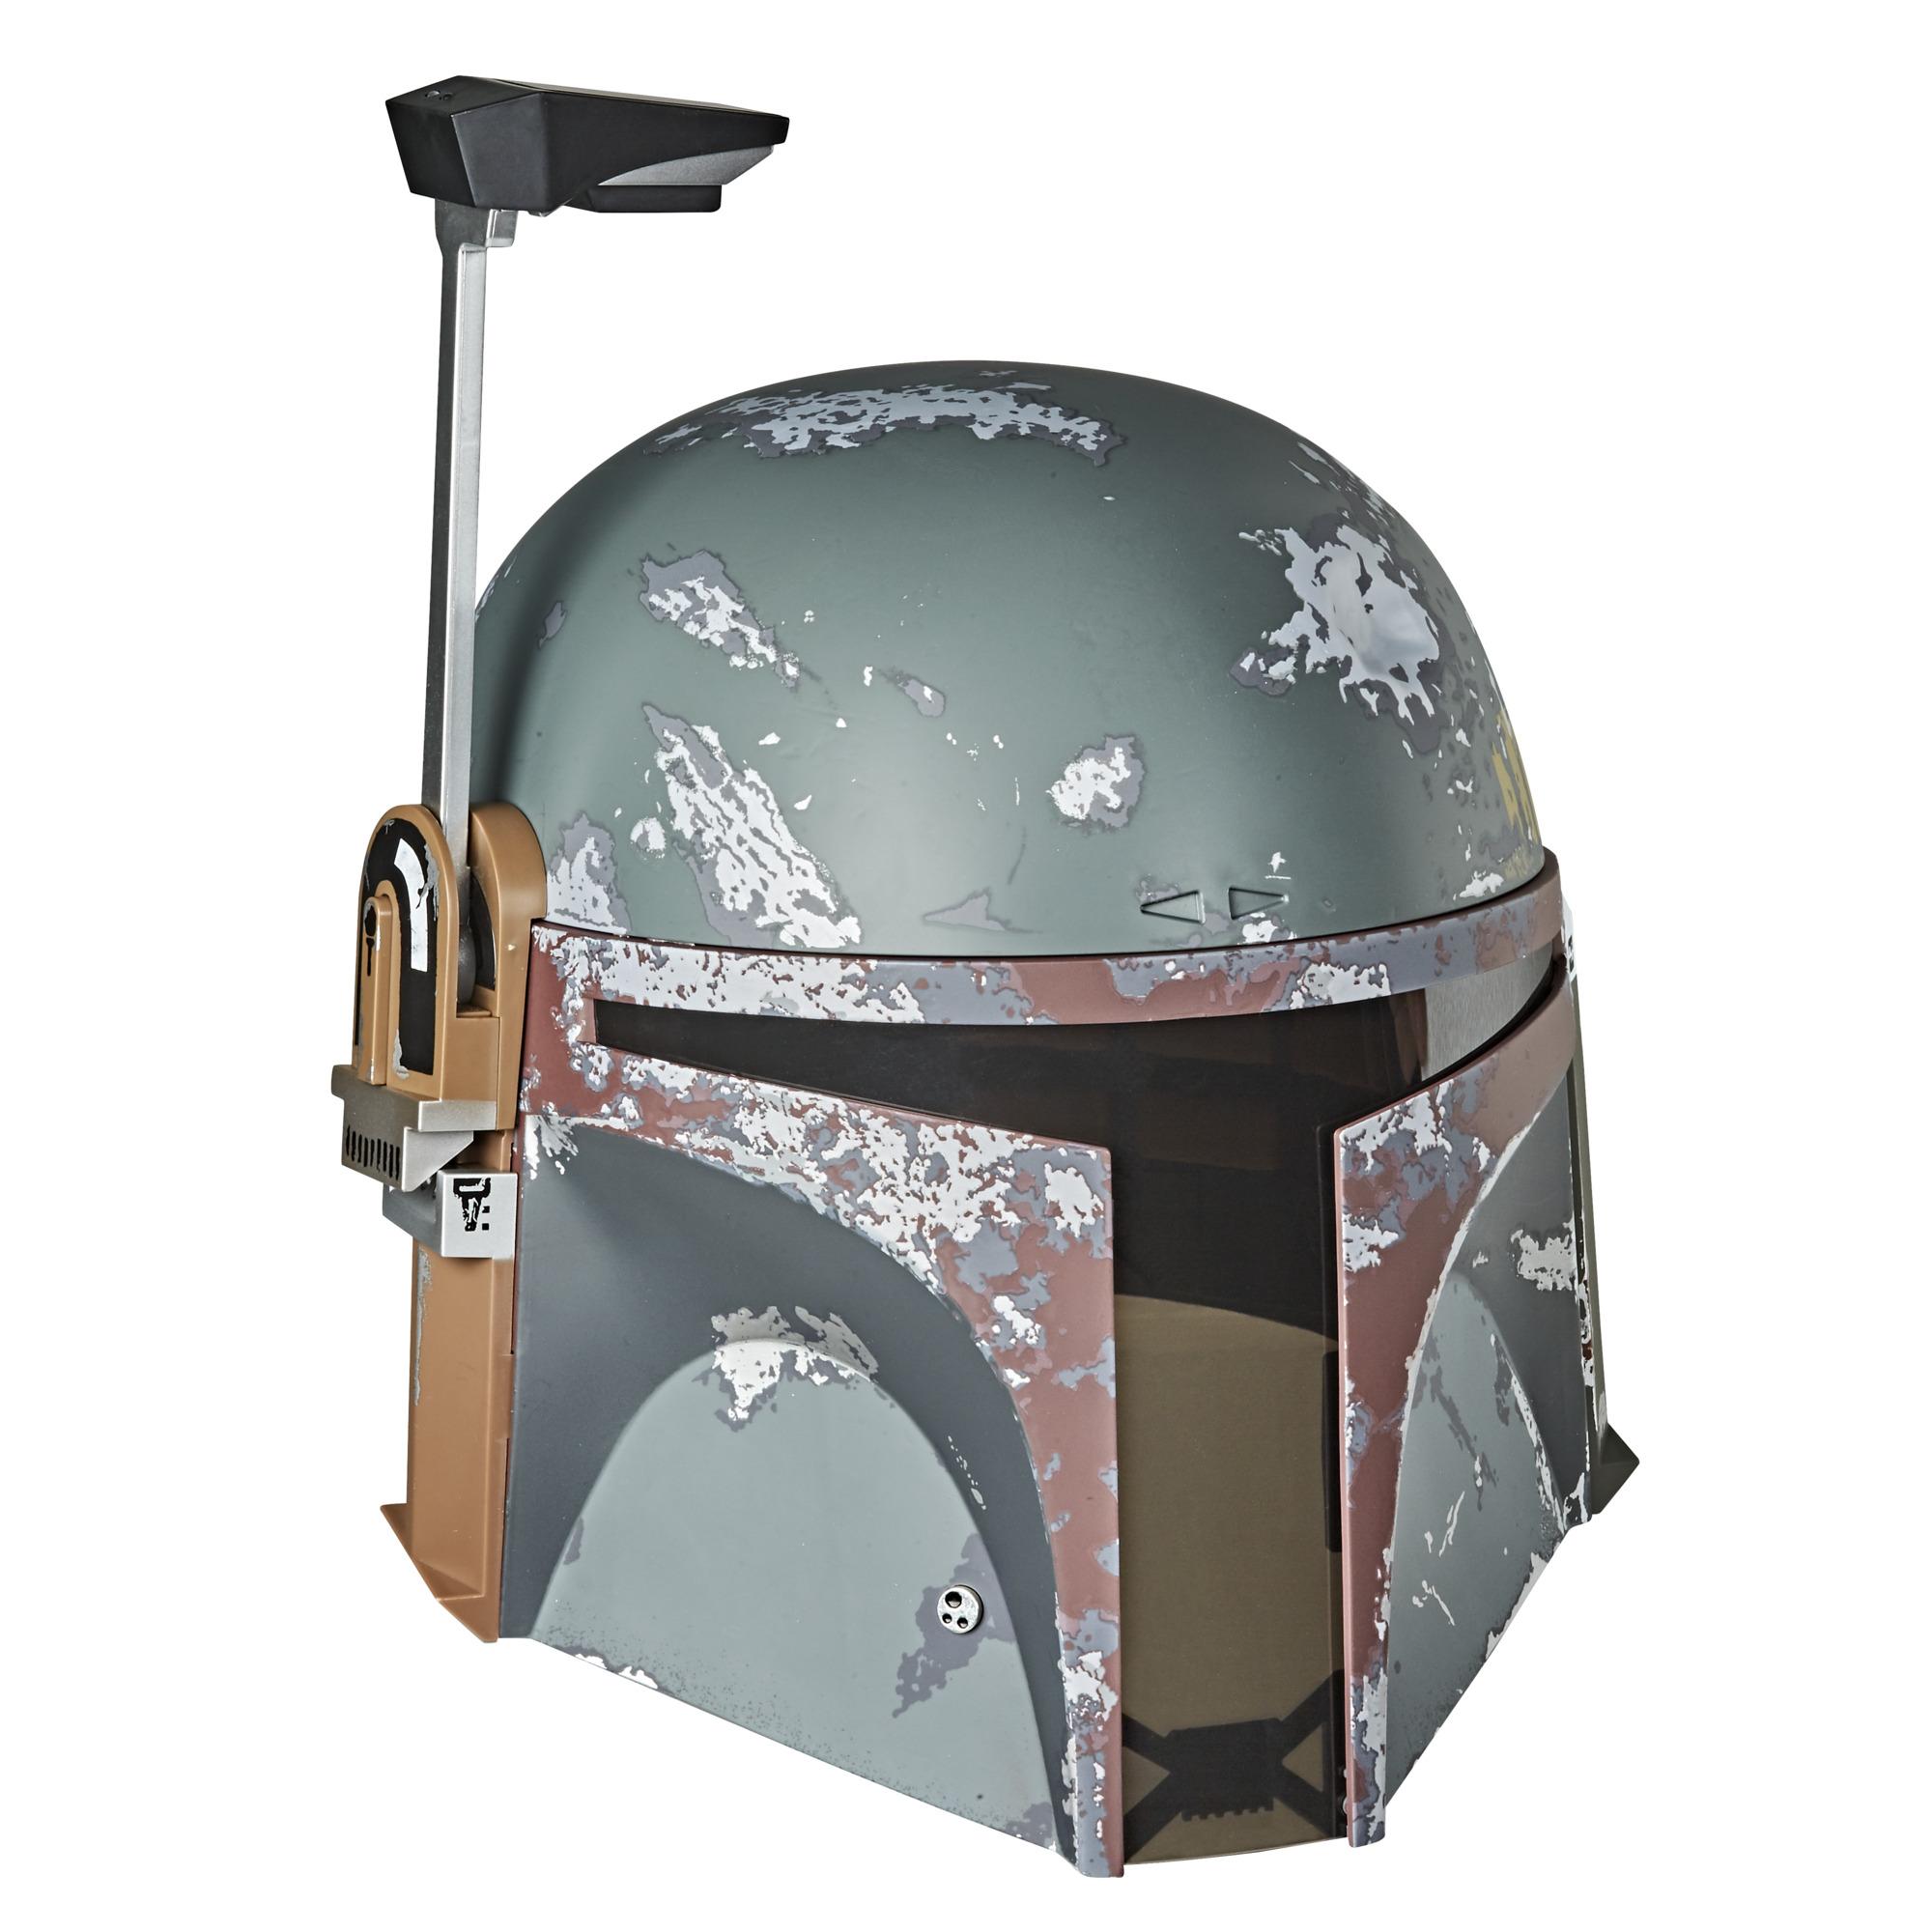 Star Wars The Black Series Boba Fett elektronischer Helm Star Wars: Das Imperium schlägt zurück Rollenspielprodukt